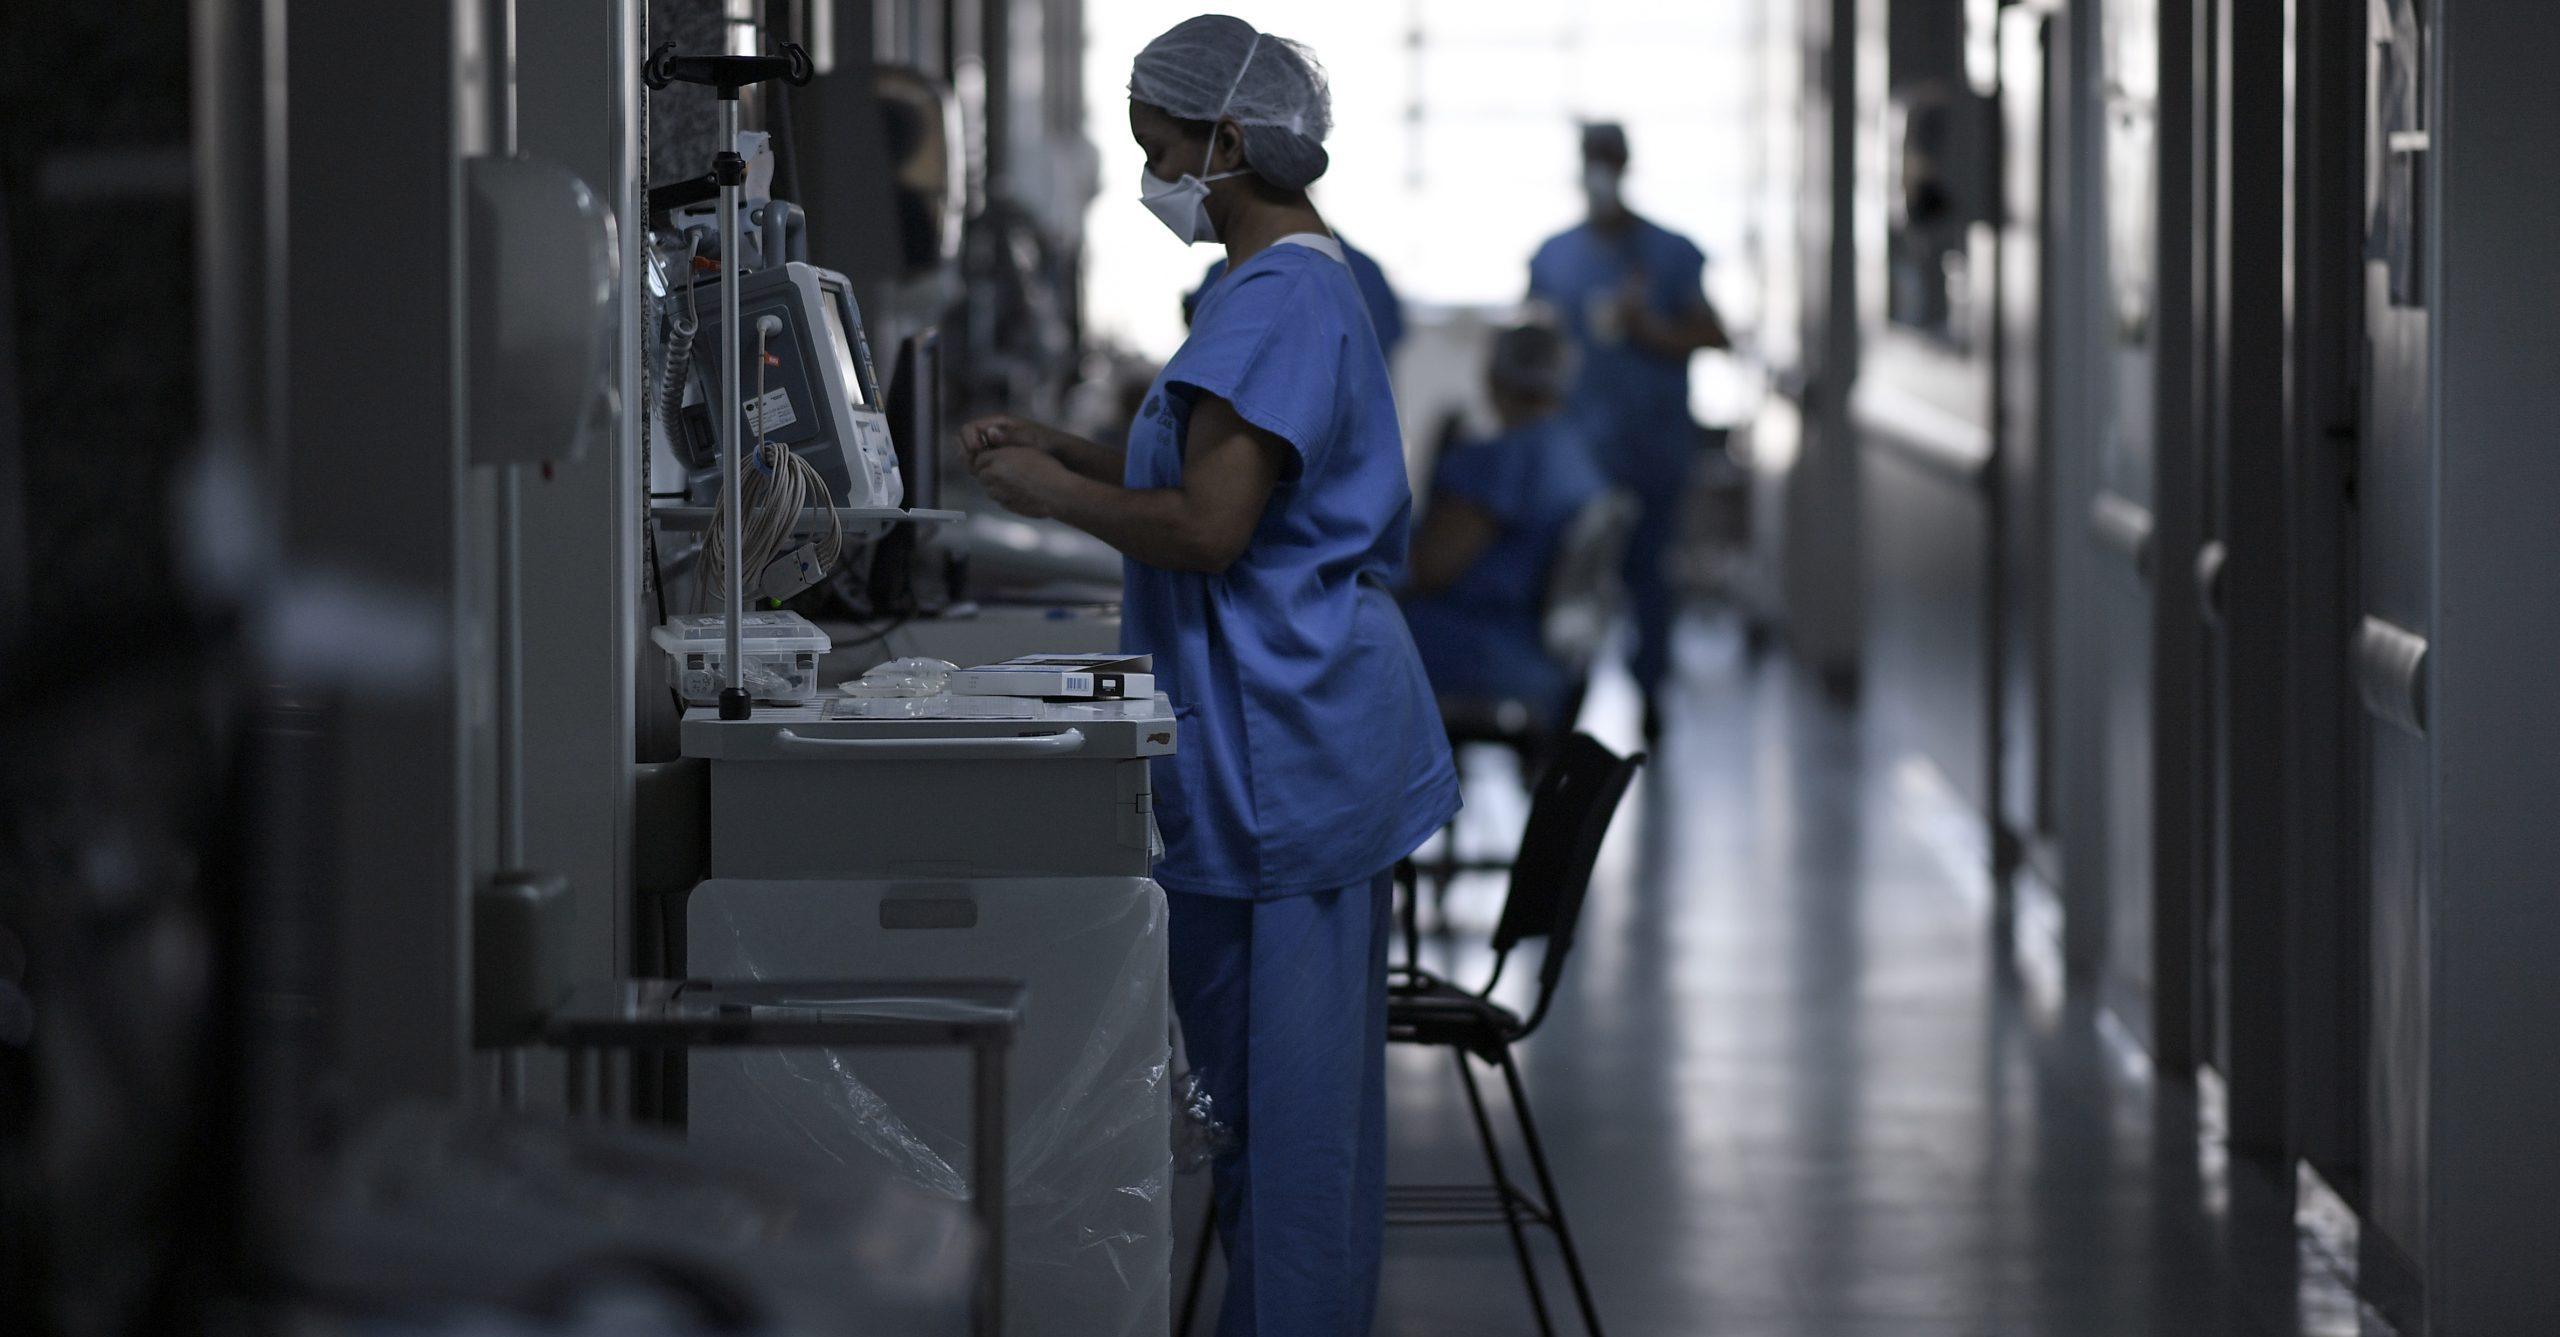 Enfermeras con hijos con discapacidad se amparan para no trabajar durante pandemia